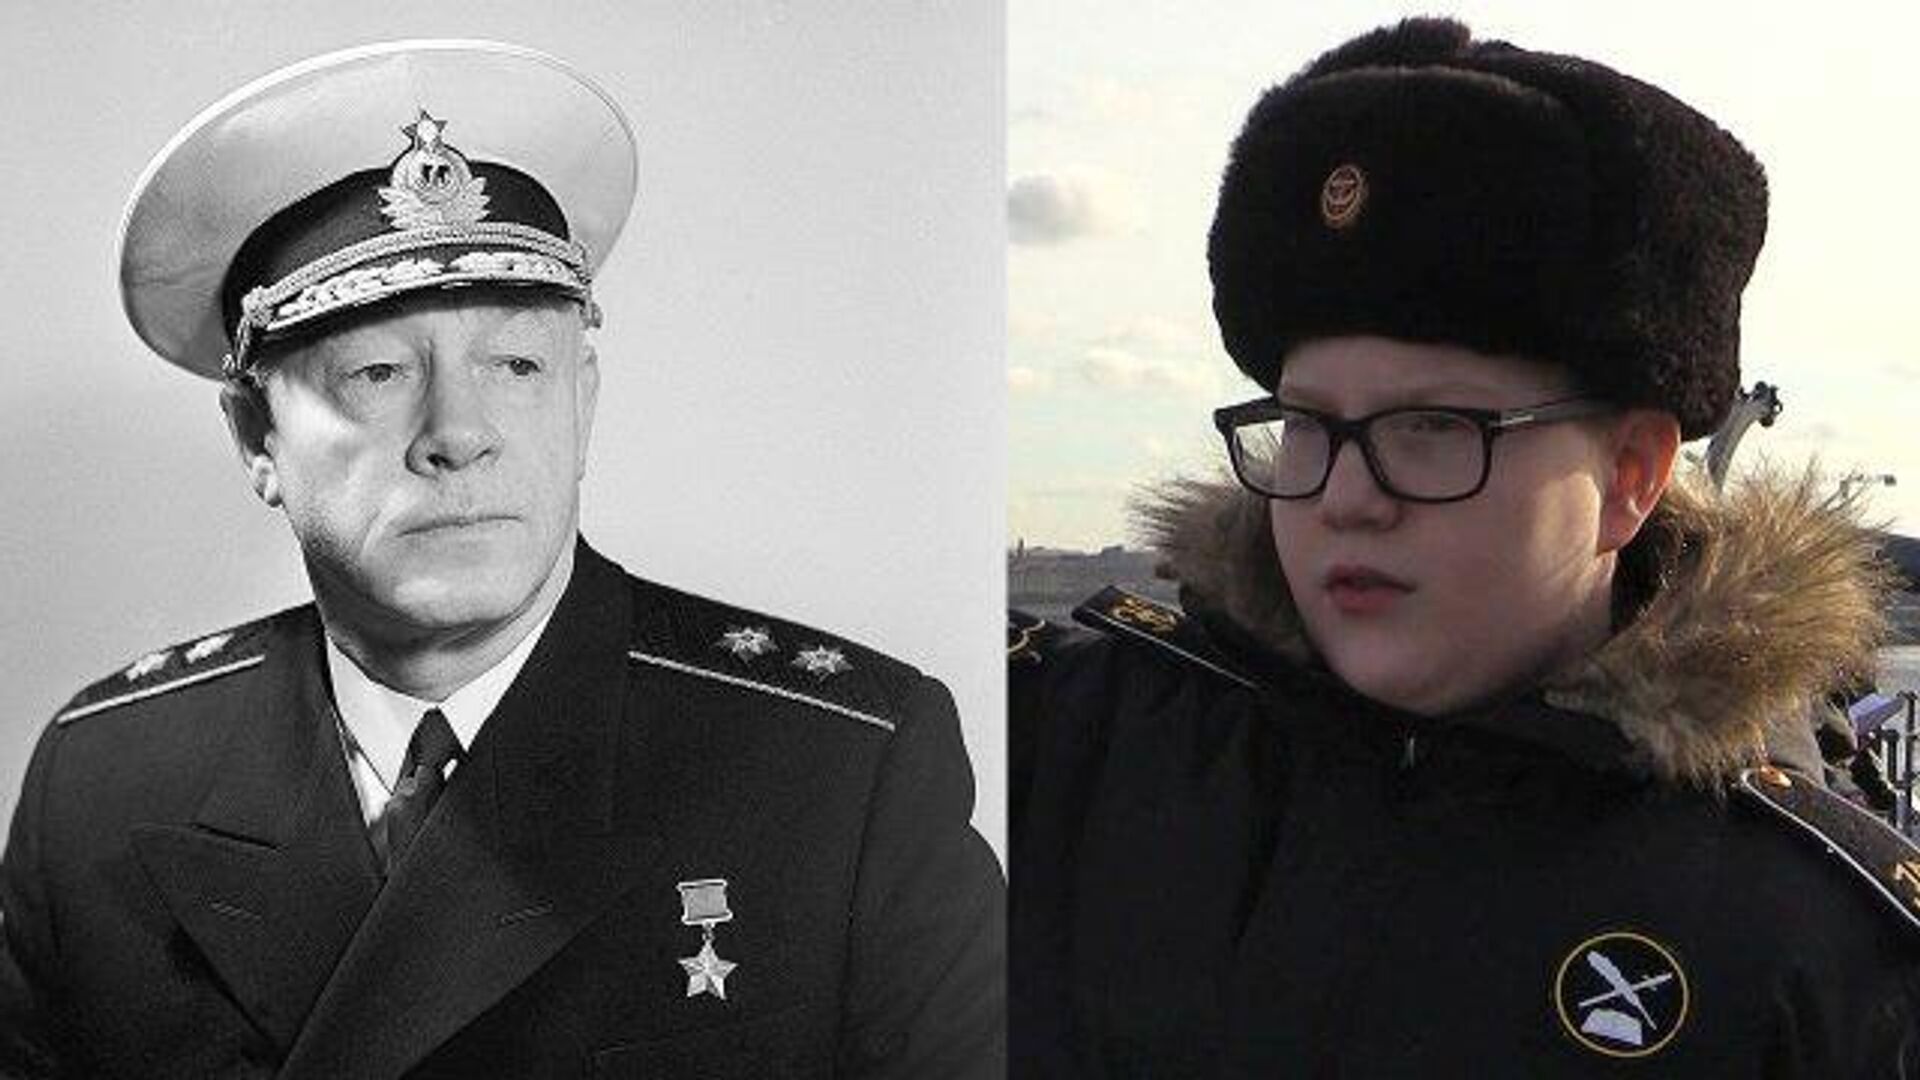 Адмирал кузнецов личная жизнь семья дети. Адмирал Кузнецов в молодости.